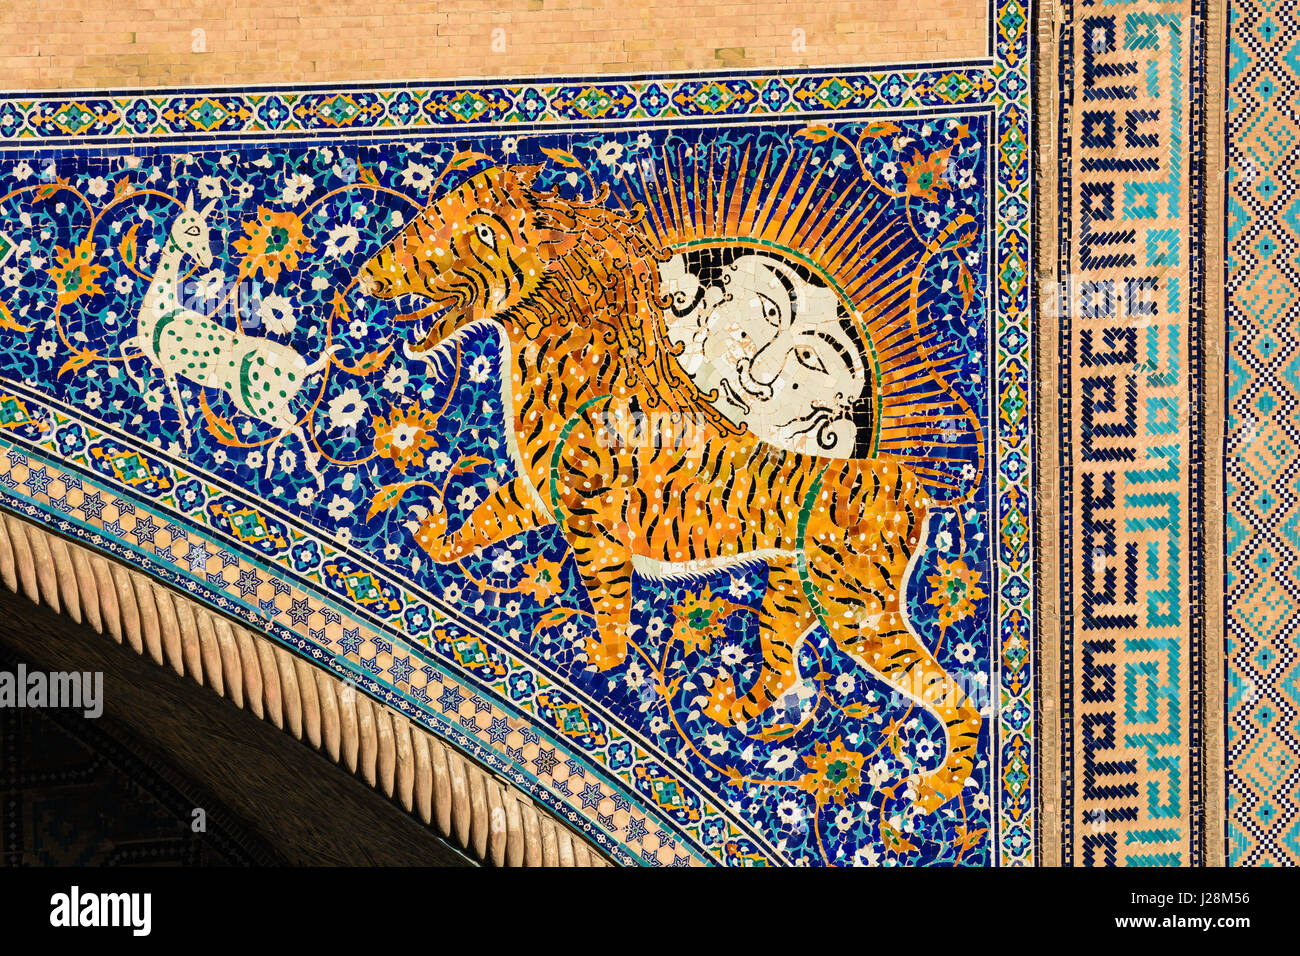 Usbekistan, Samarkand Provinz, Samarkand, Sher Dor Medrese am Registan (17. Jh.). Die Tigers sind auf die usbekische "Sum" Banknote abgebildet. Stockfoto